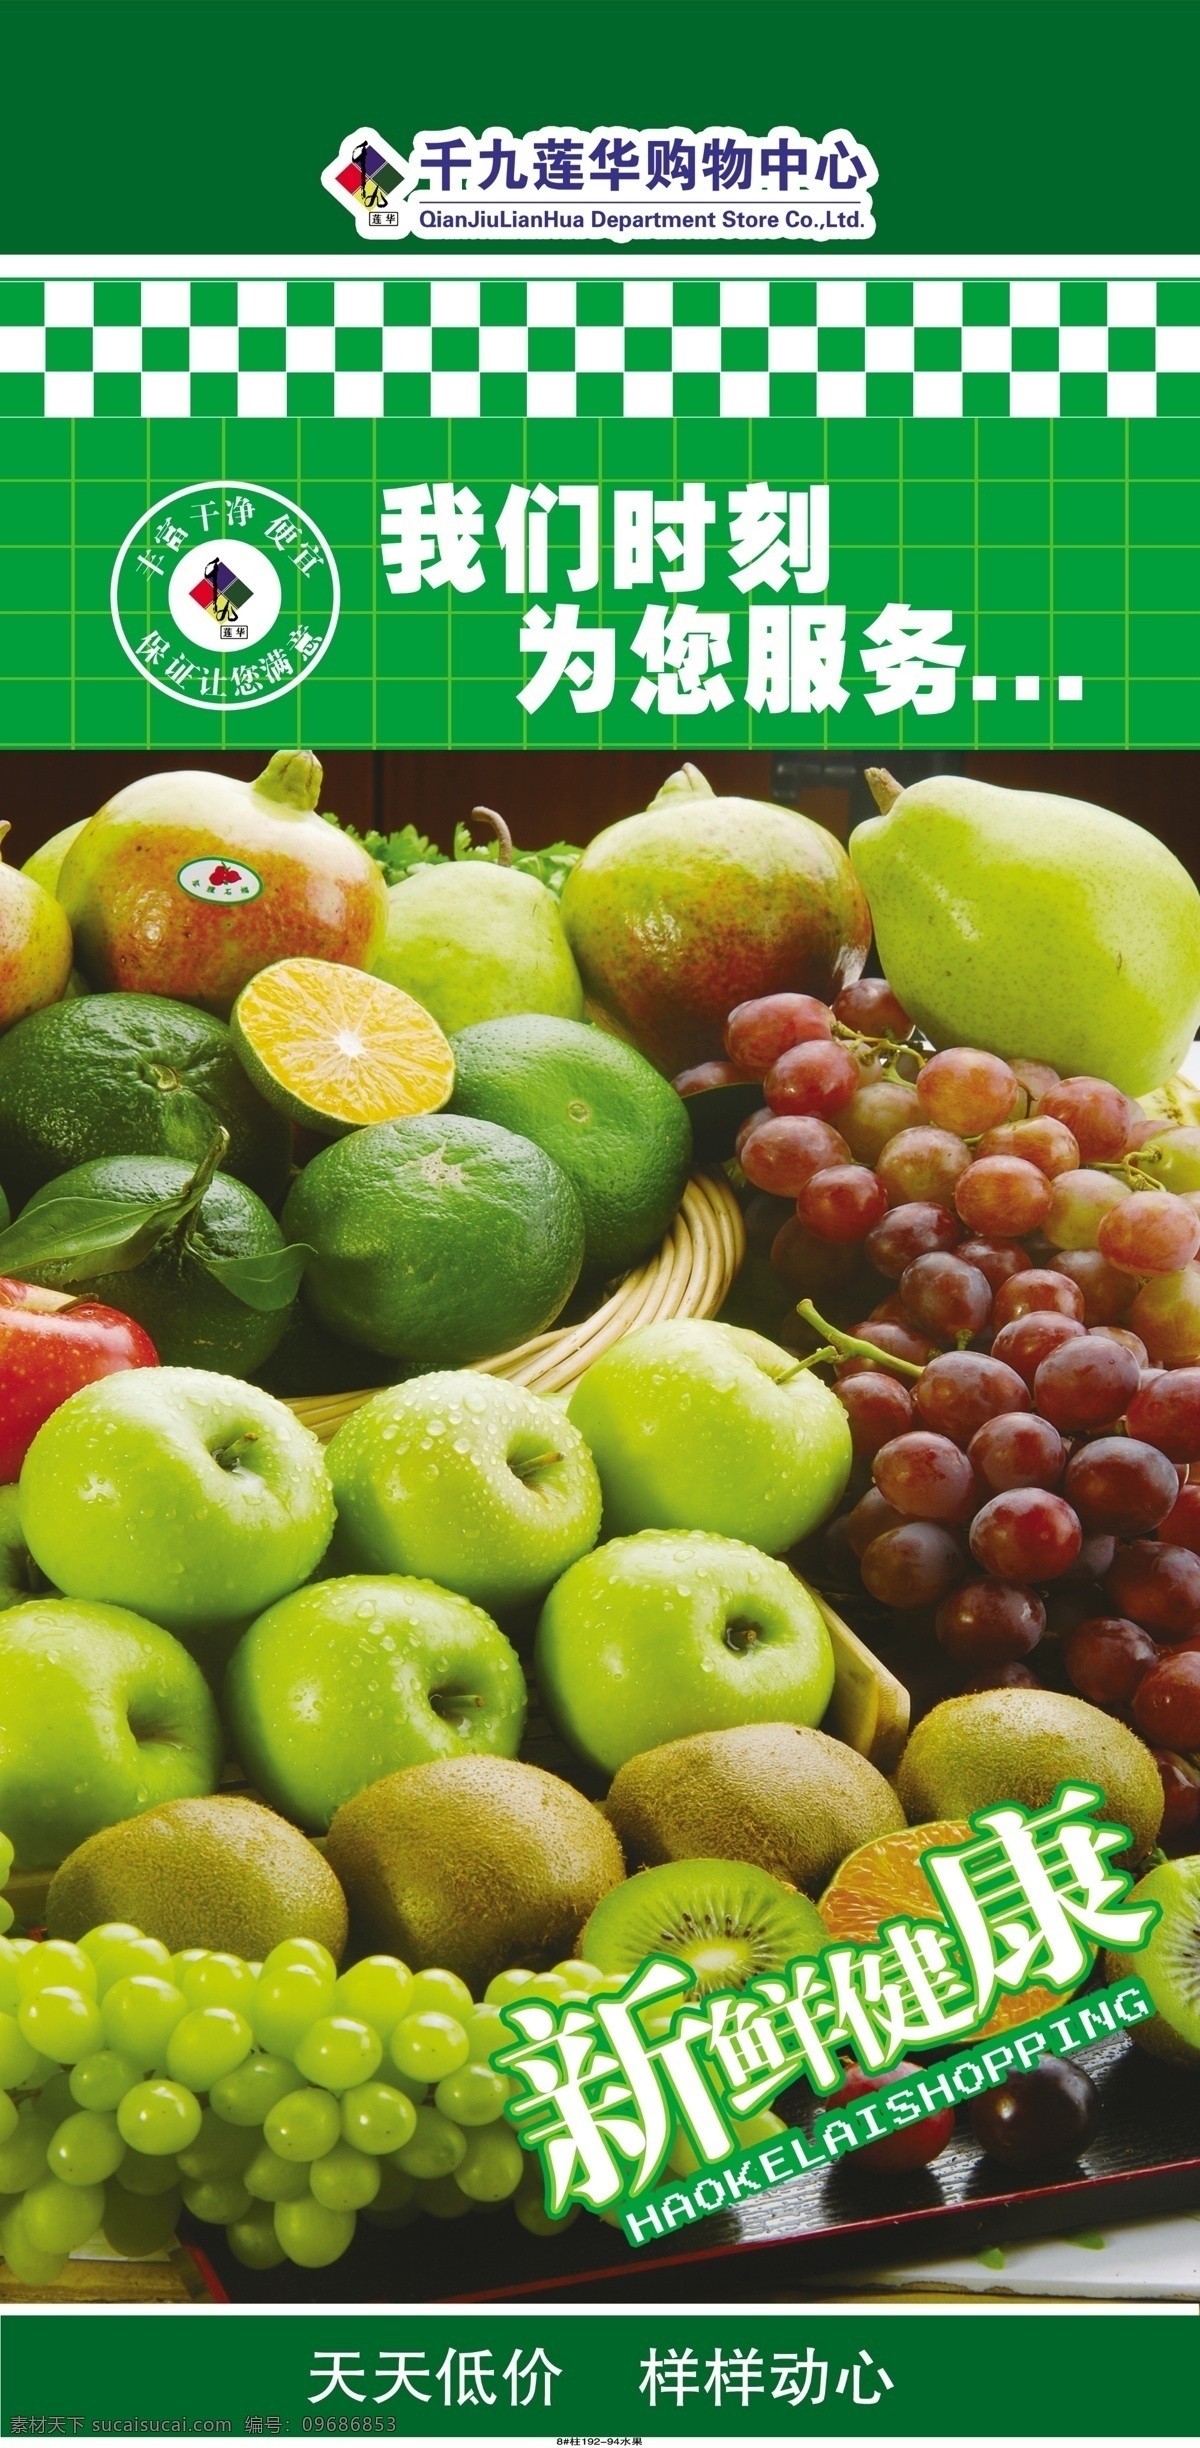 超市柱子海报 超市 柱子 我们 时刻 为您服务 健康 美丽 水果 精彩生活 其他模版 广告设计模板 源文件